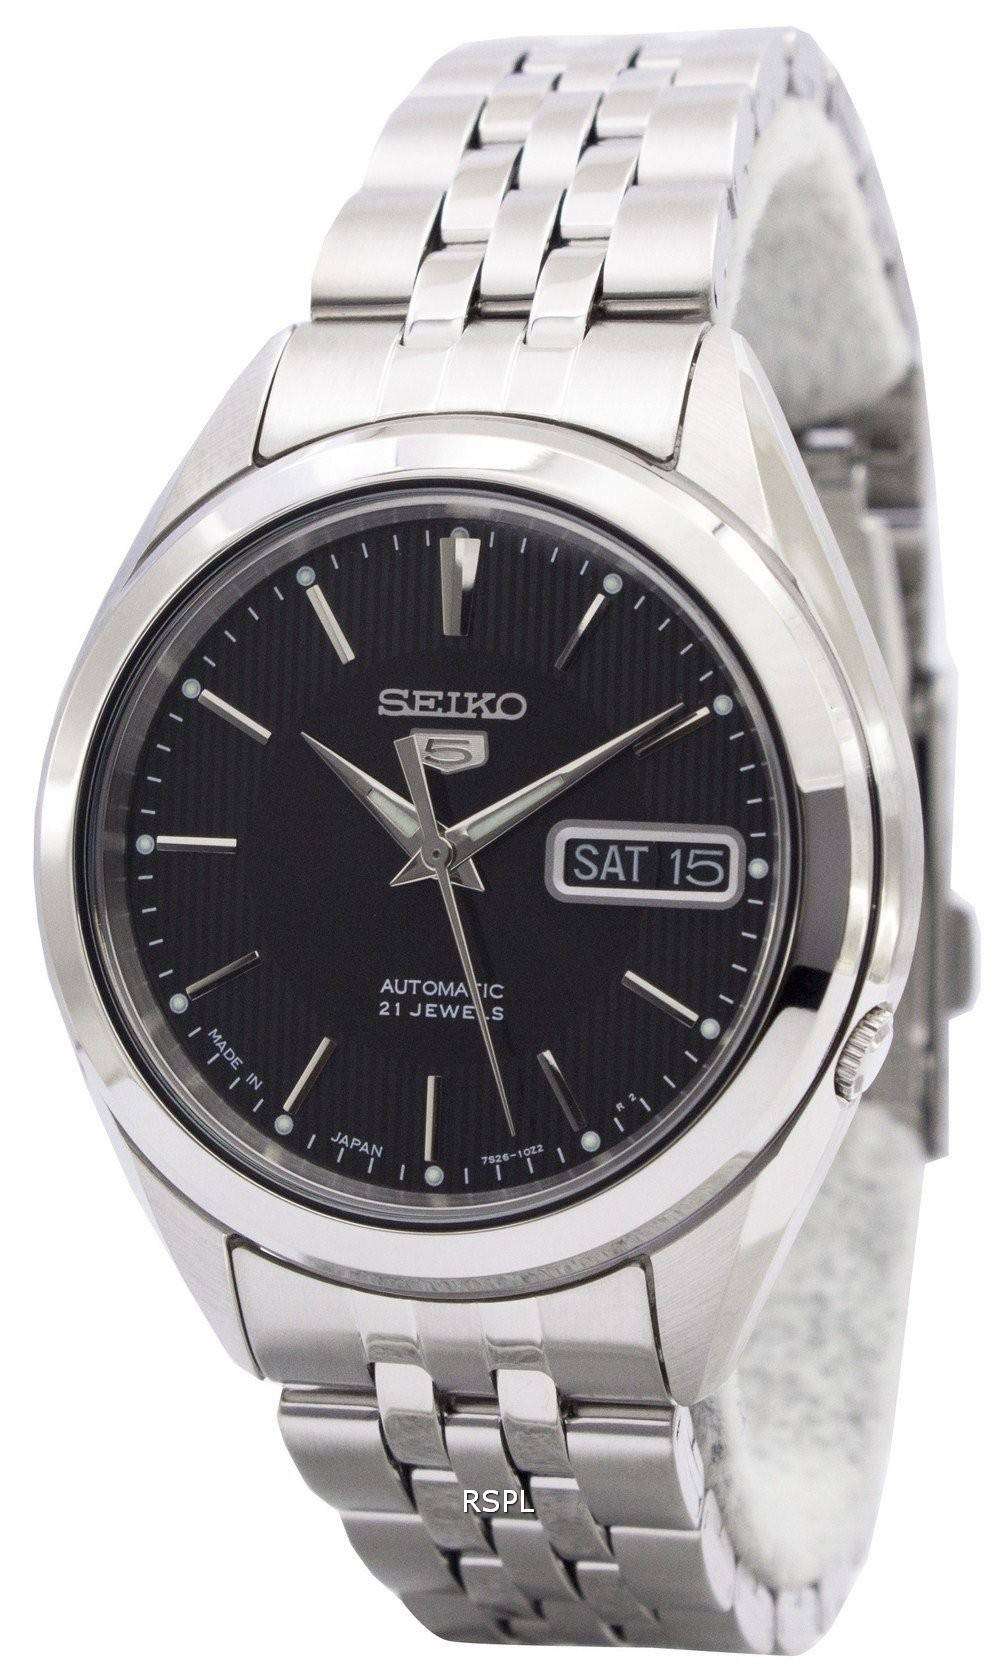 SEIKO セイコー automatic 21Jewels - 腕時計(アナログ)